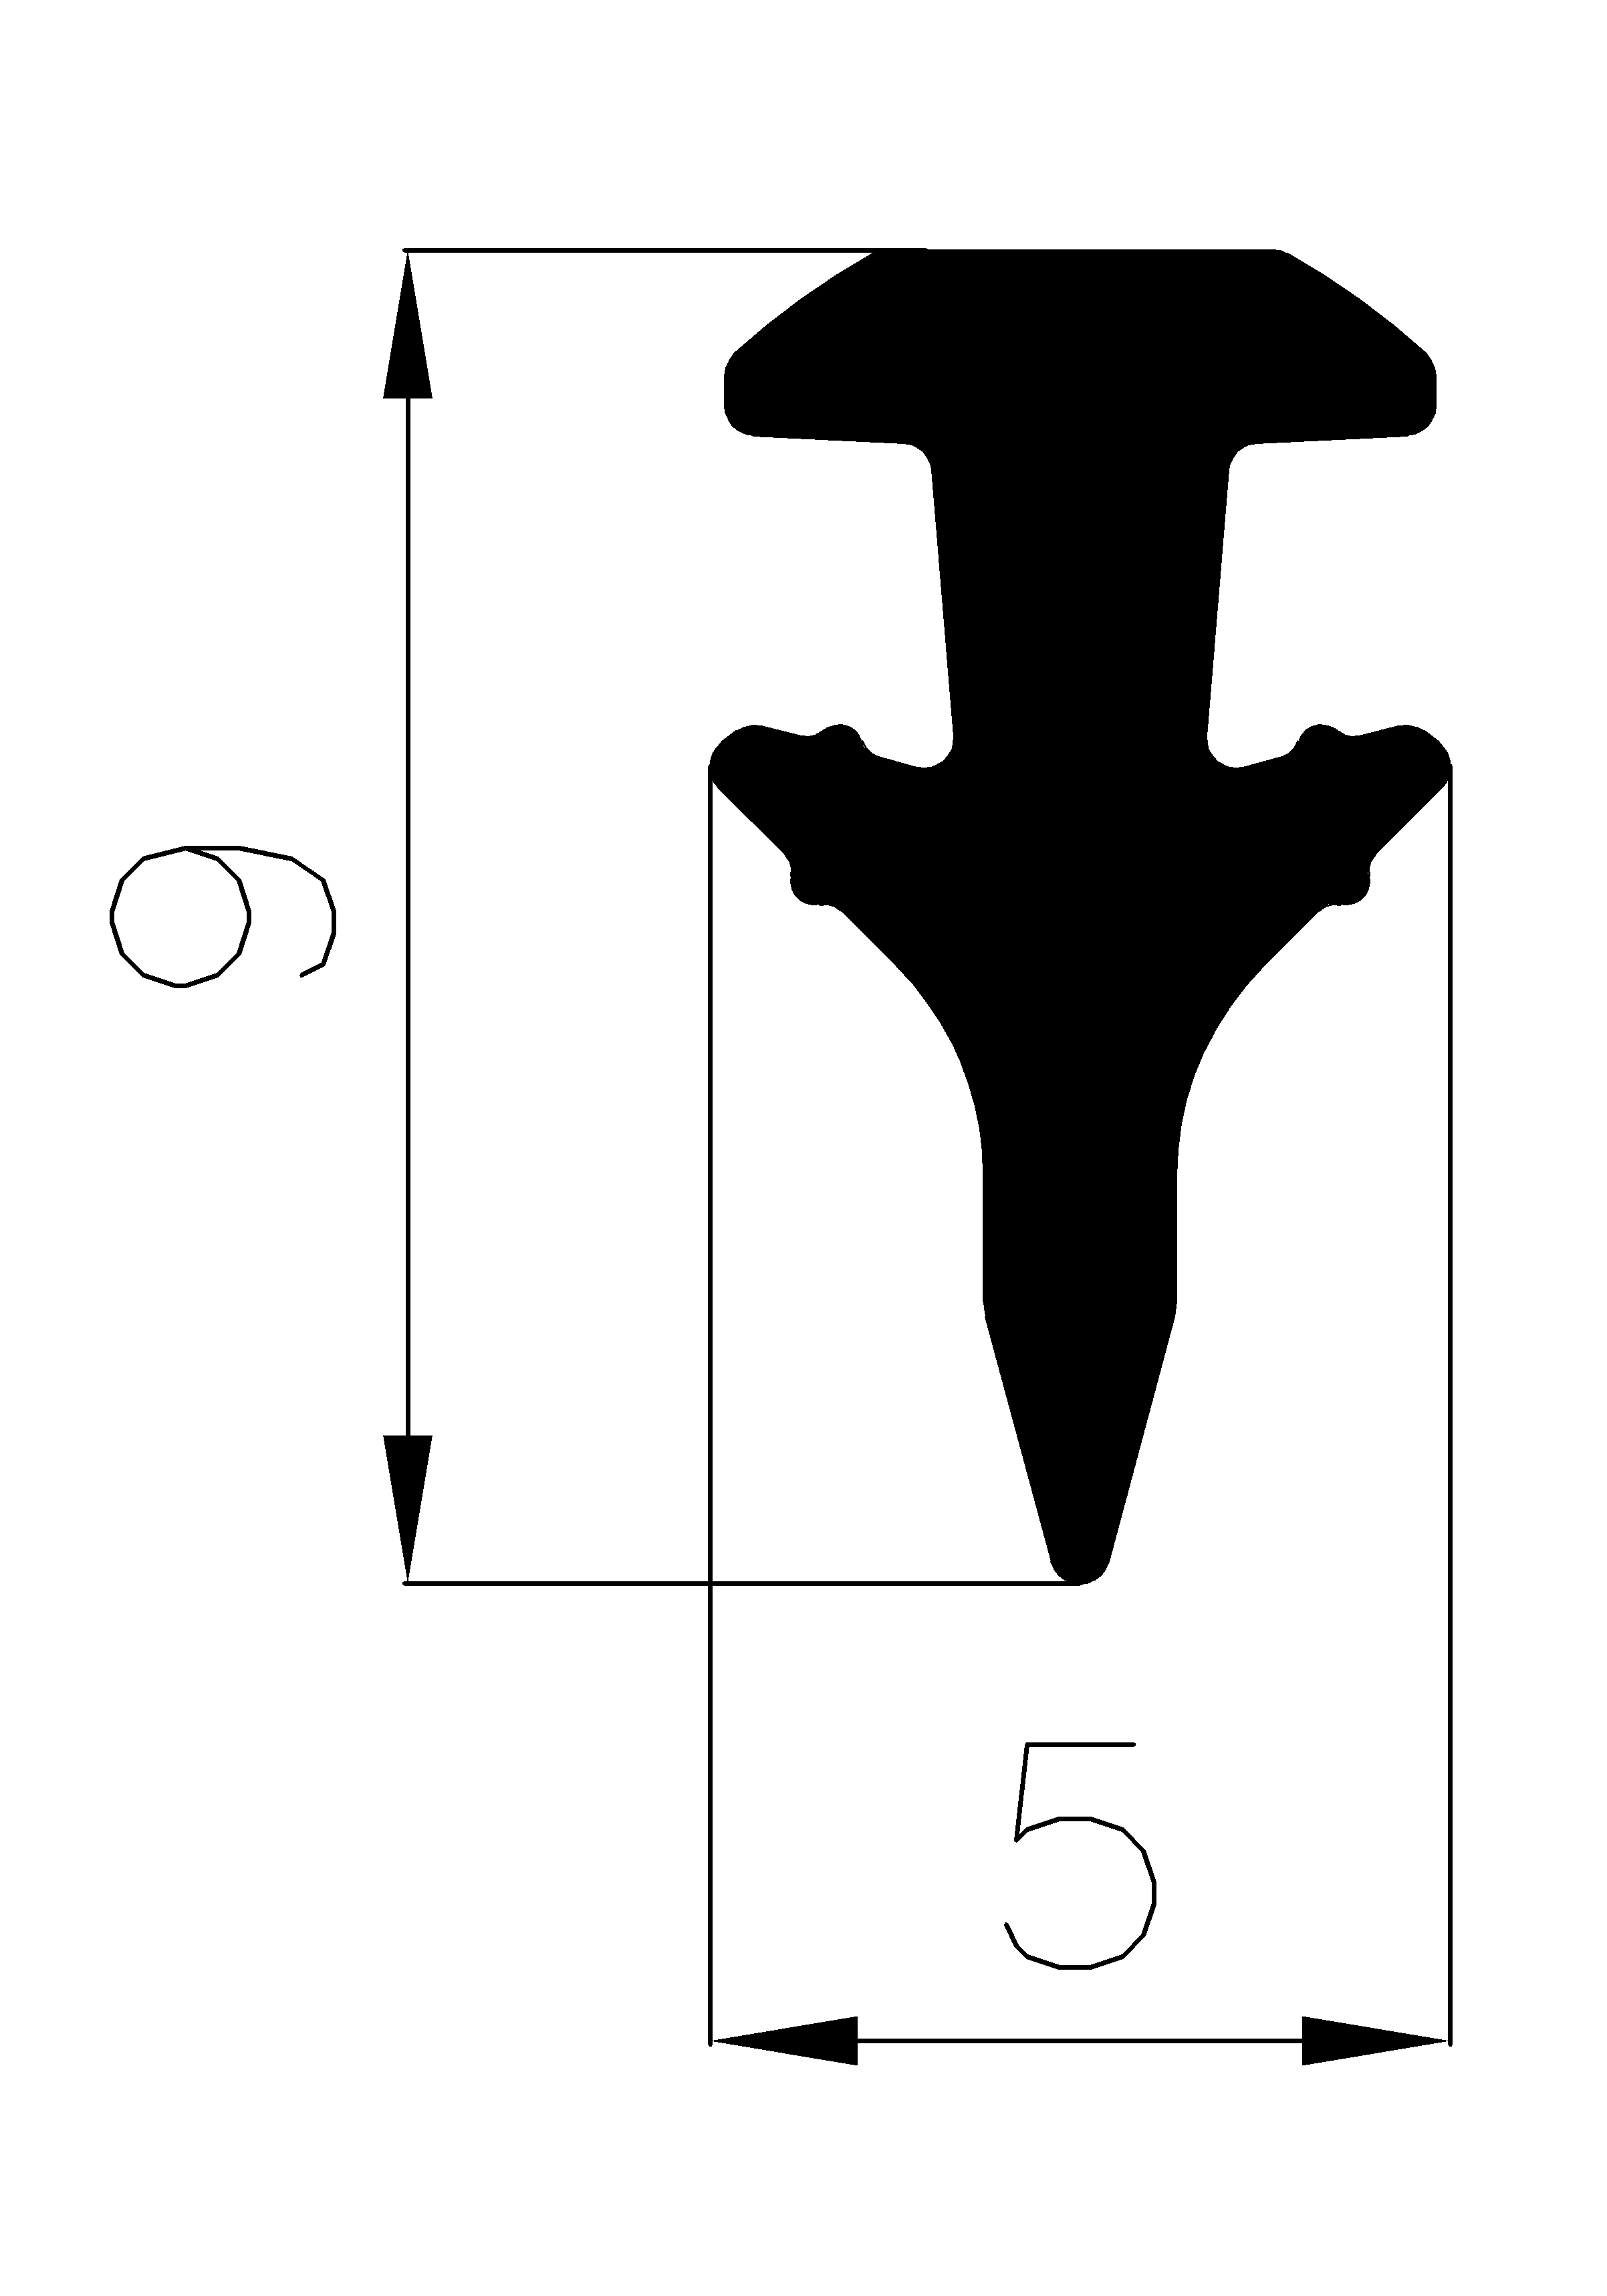 1130180KG - szilikon gumiprofilok - Takaró és 'T' alakú profilok